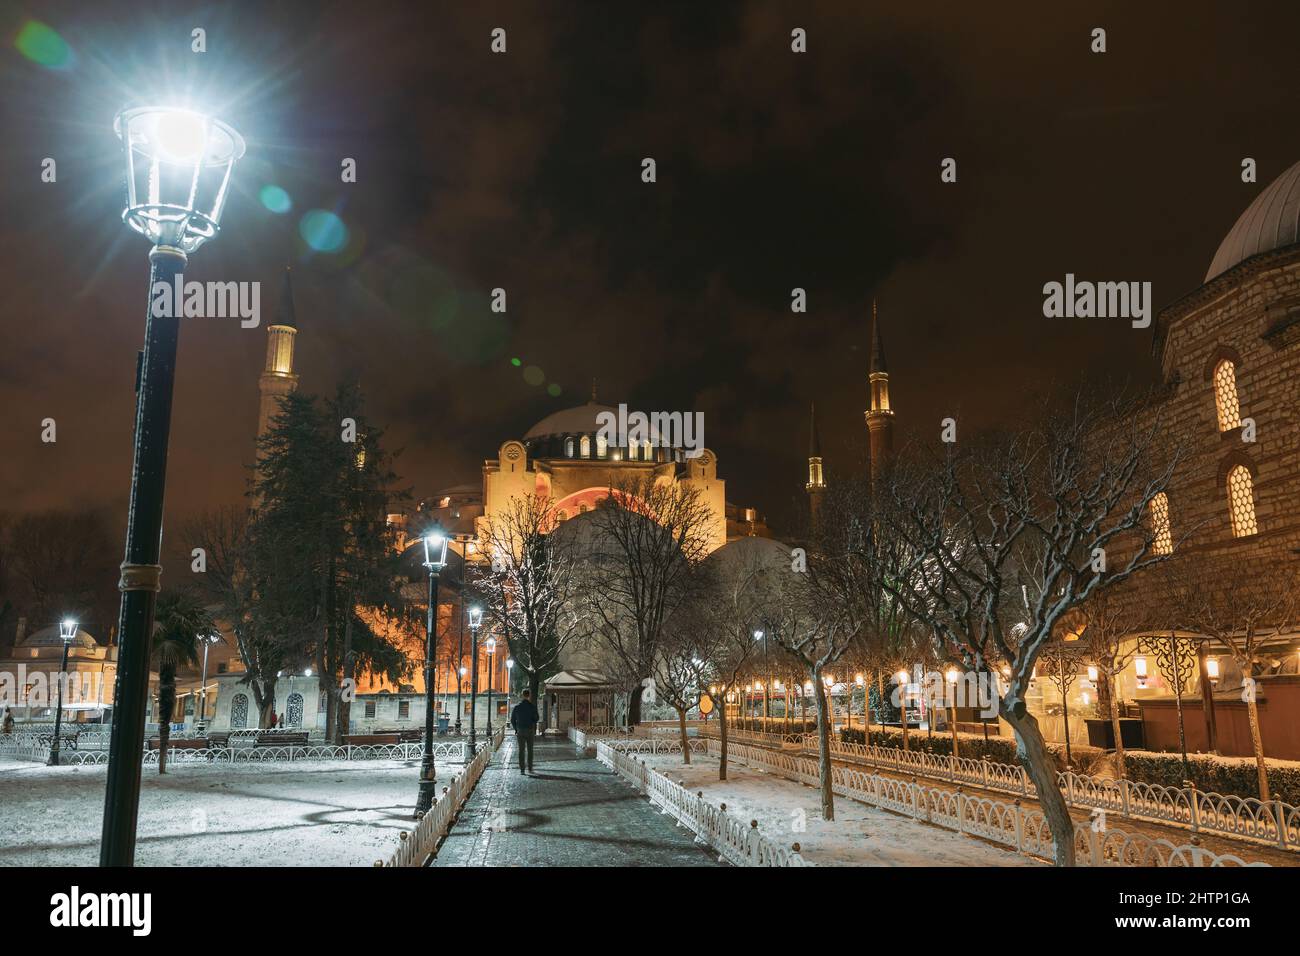 Hagia Sophia in inverno. Ayasofya o Hagia Sophia di notte in inverno. Foto di sfondo di Istanbul. Rumore incluso. Foto Stock